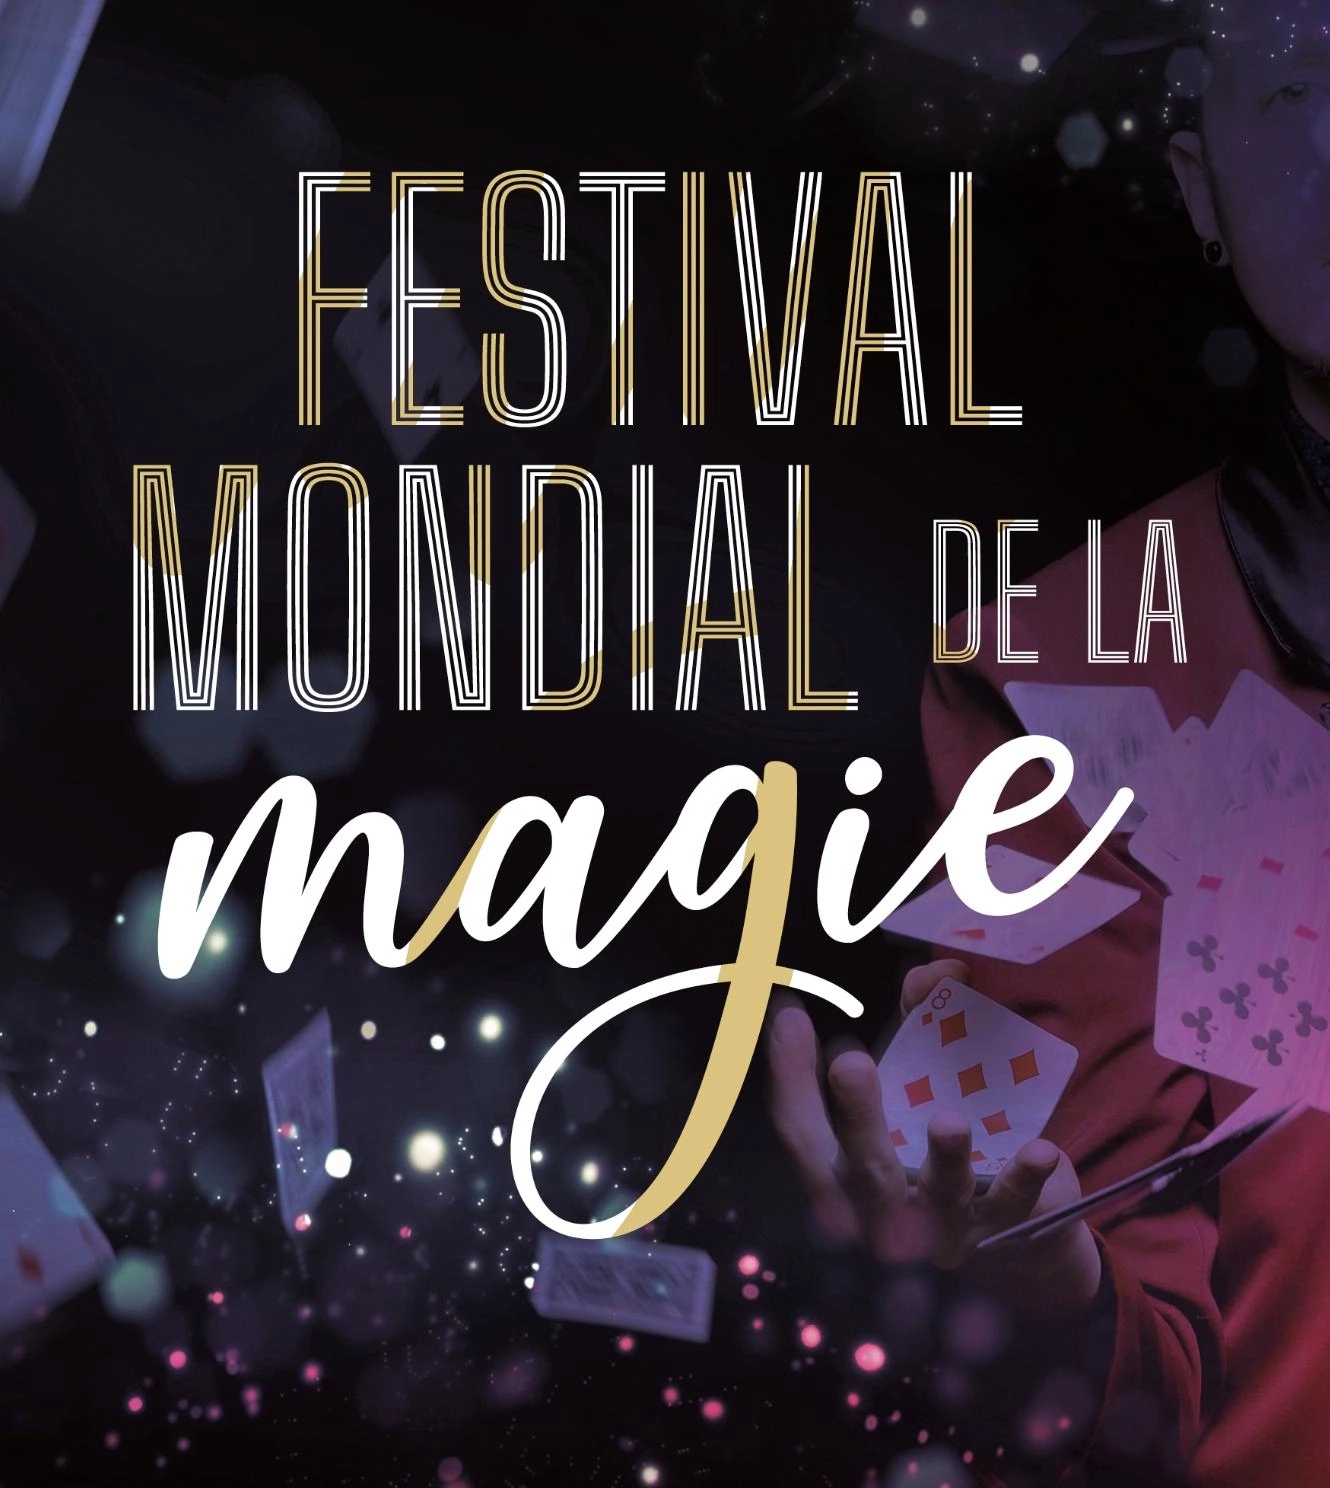 Festival Mondial De La Magie at Palais Neptune Tickets